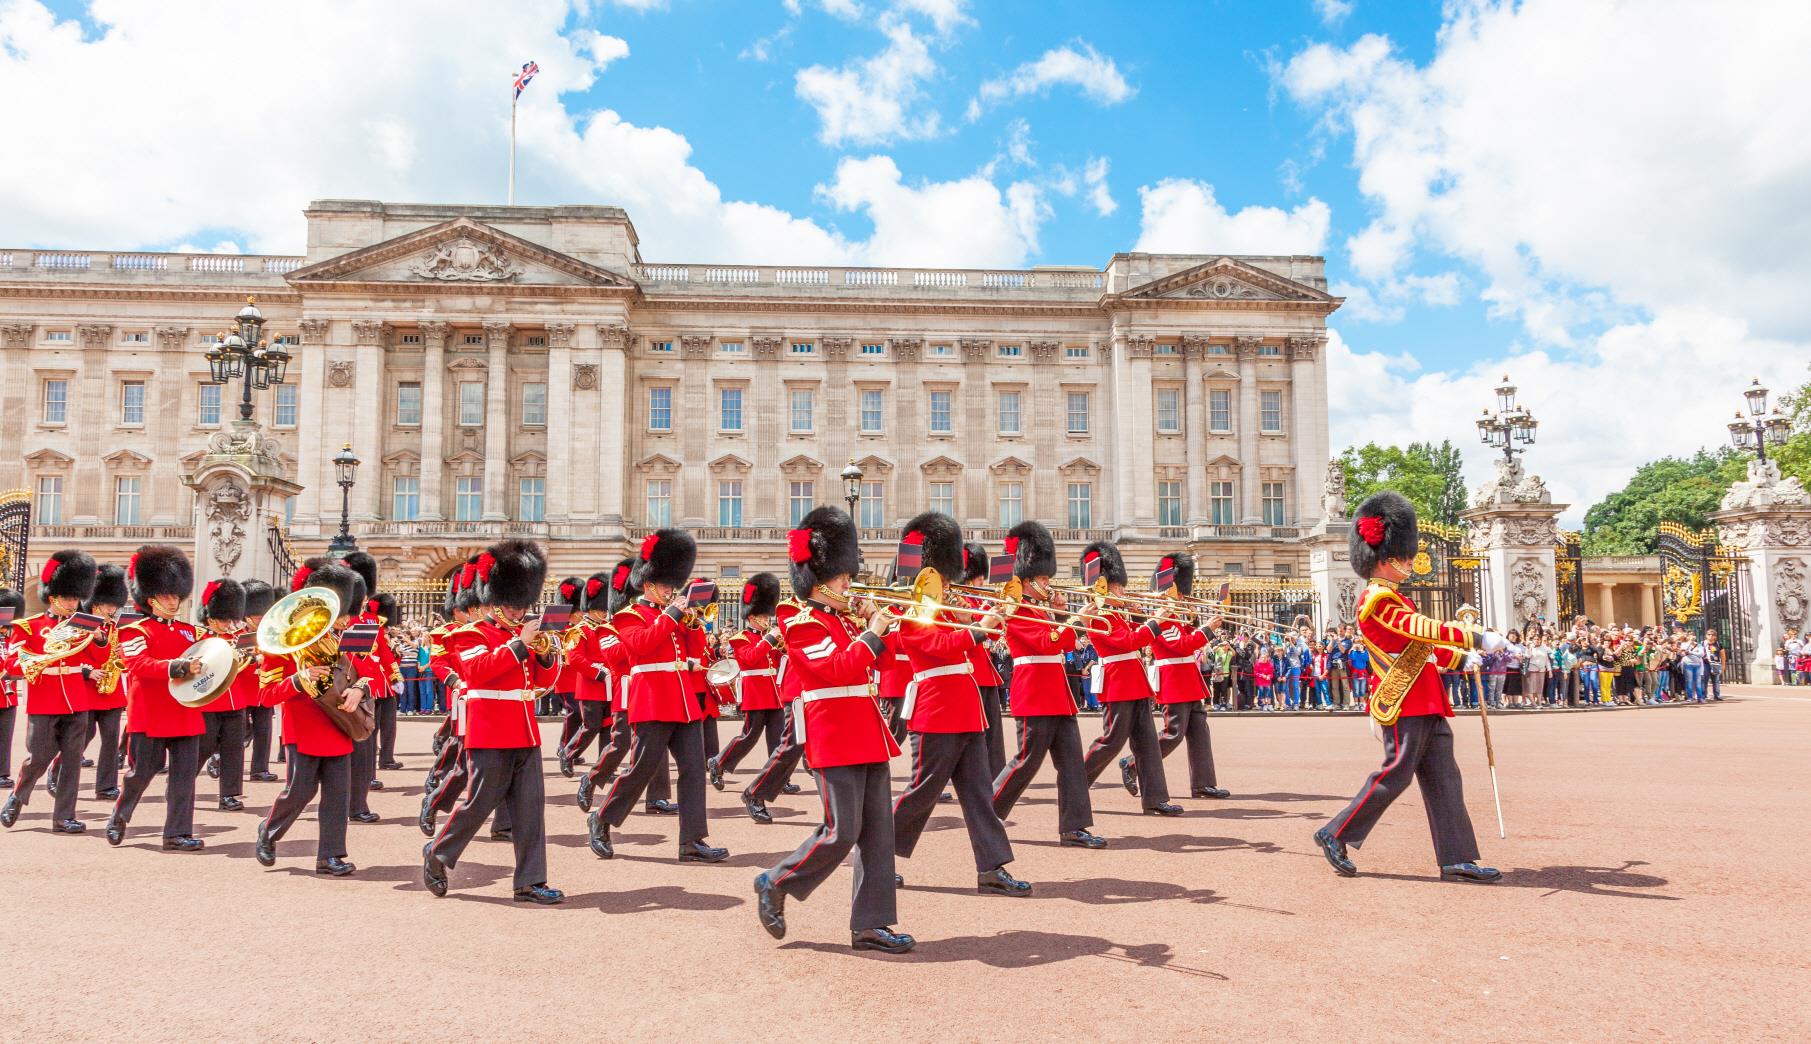 버킹검 궁전  Buckingham Palace